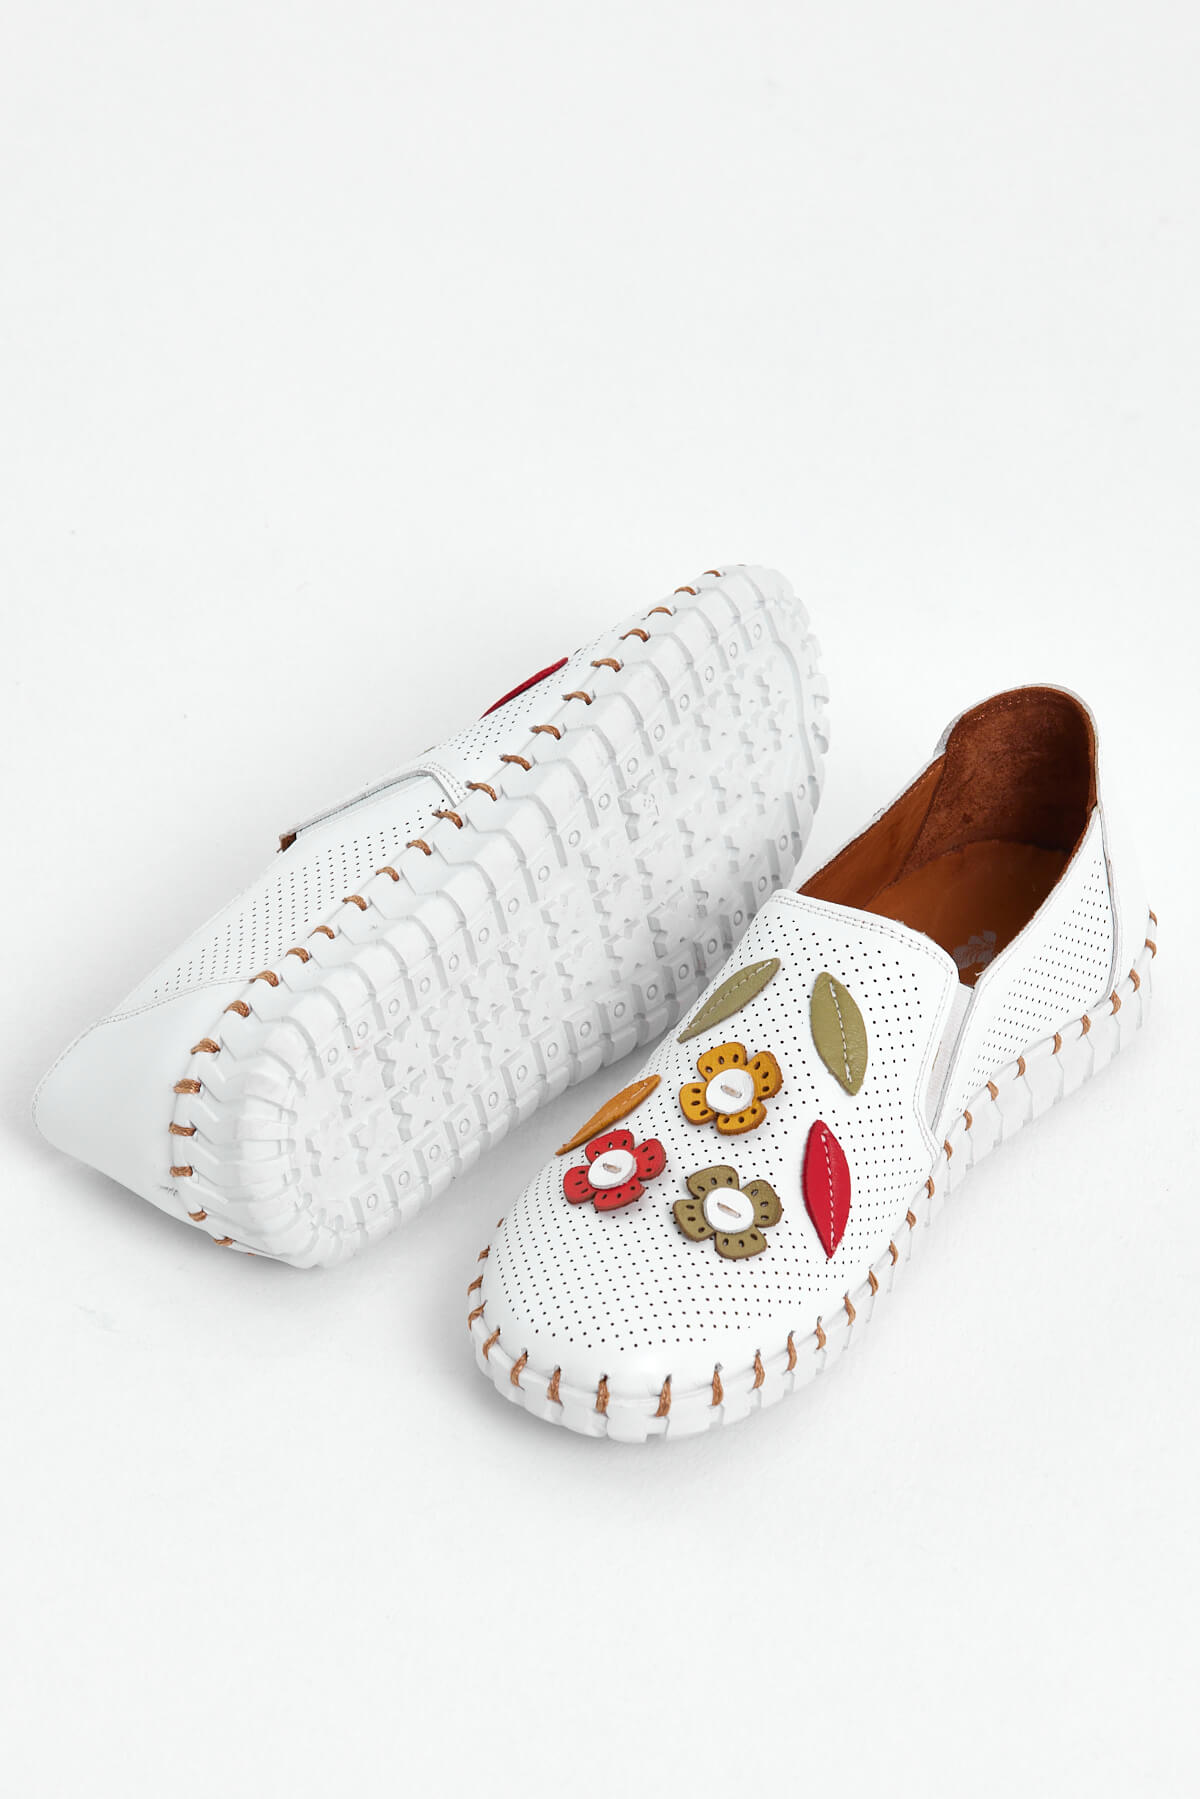 Kadın Comfort Deri Ayakkabı Beyaz 2010719Y - Thumbnail